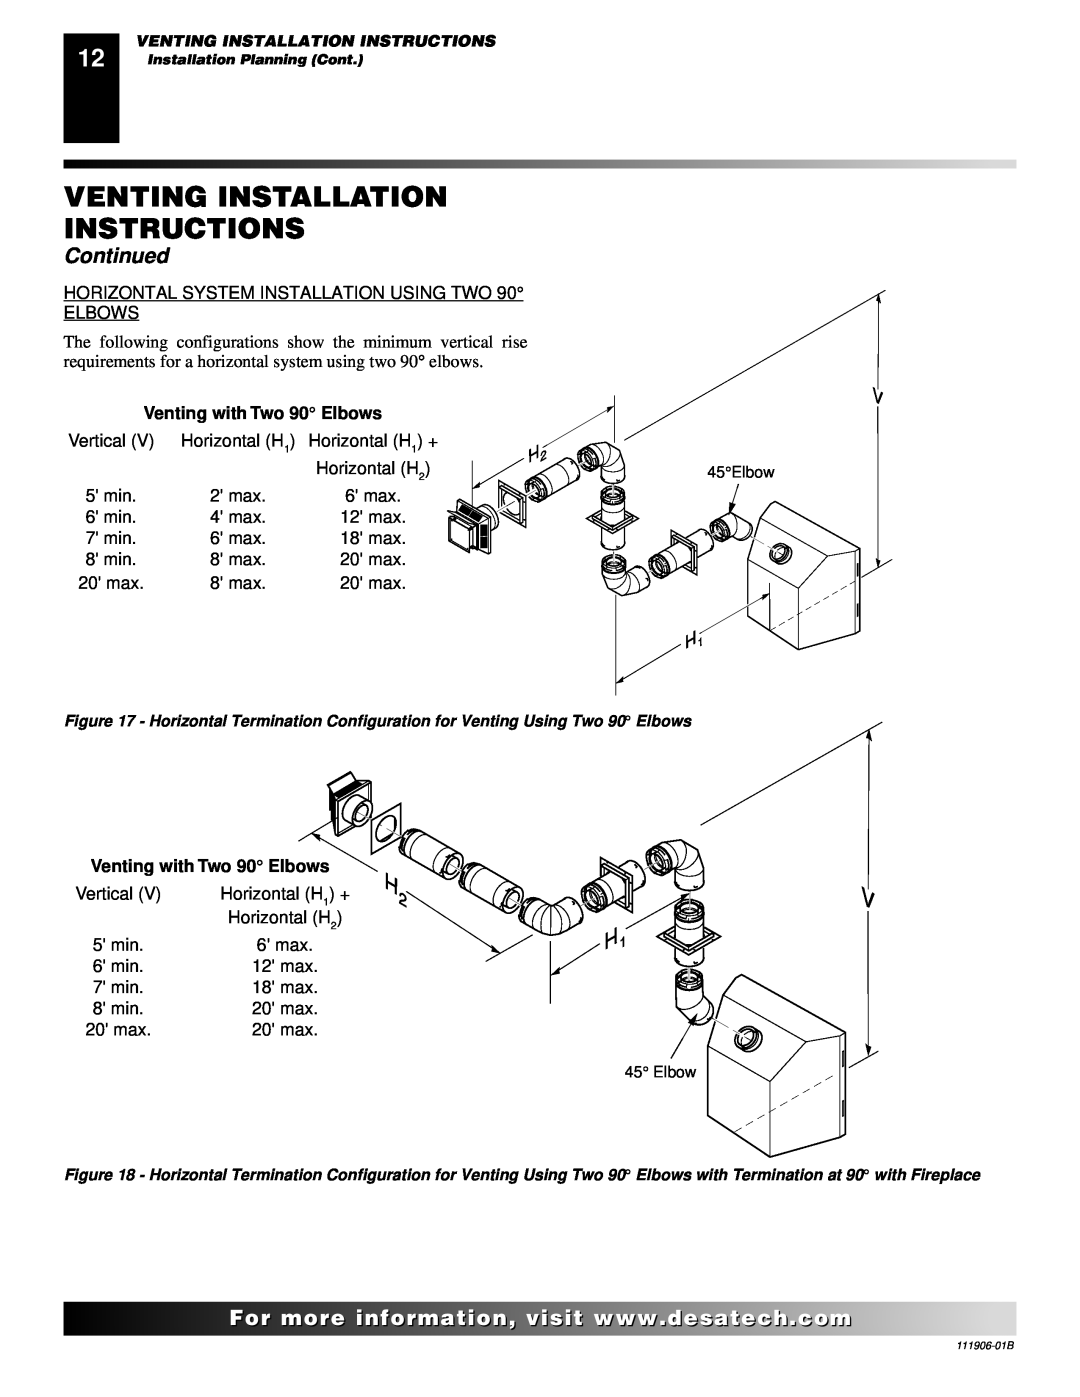 Desa (V)V42PA(1), CHDV42NRA installation manual Venting Installation Instructions, Continued, Venting with Two 90 Elbows 